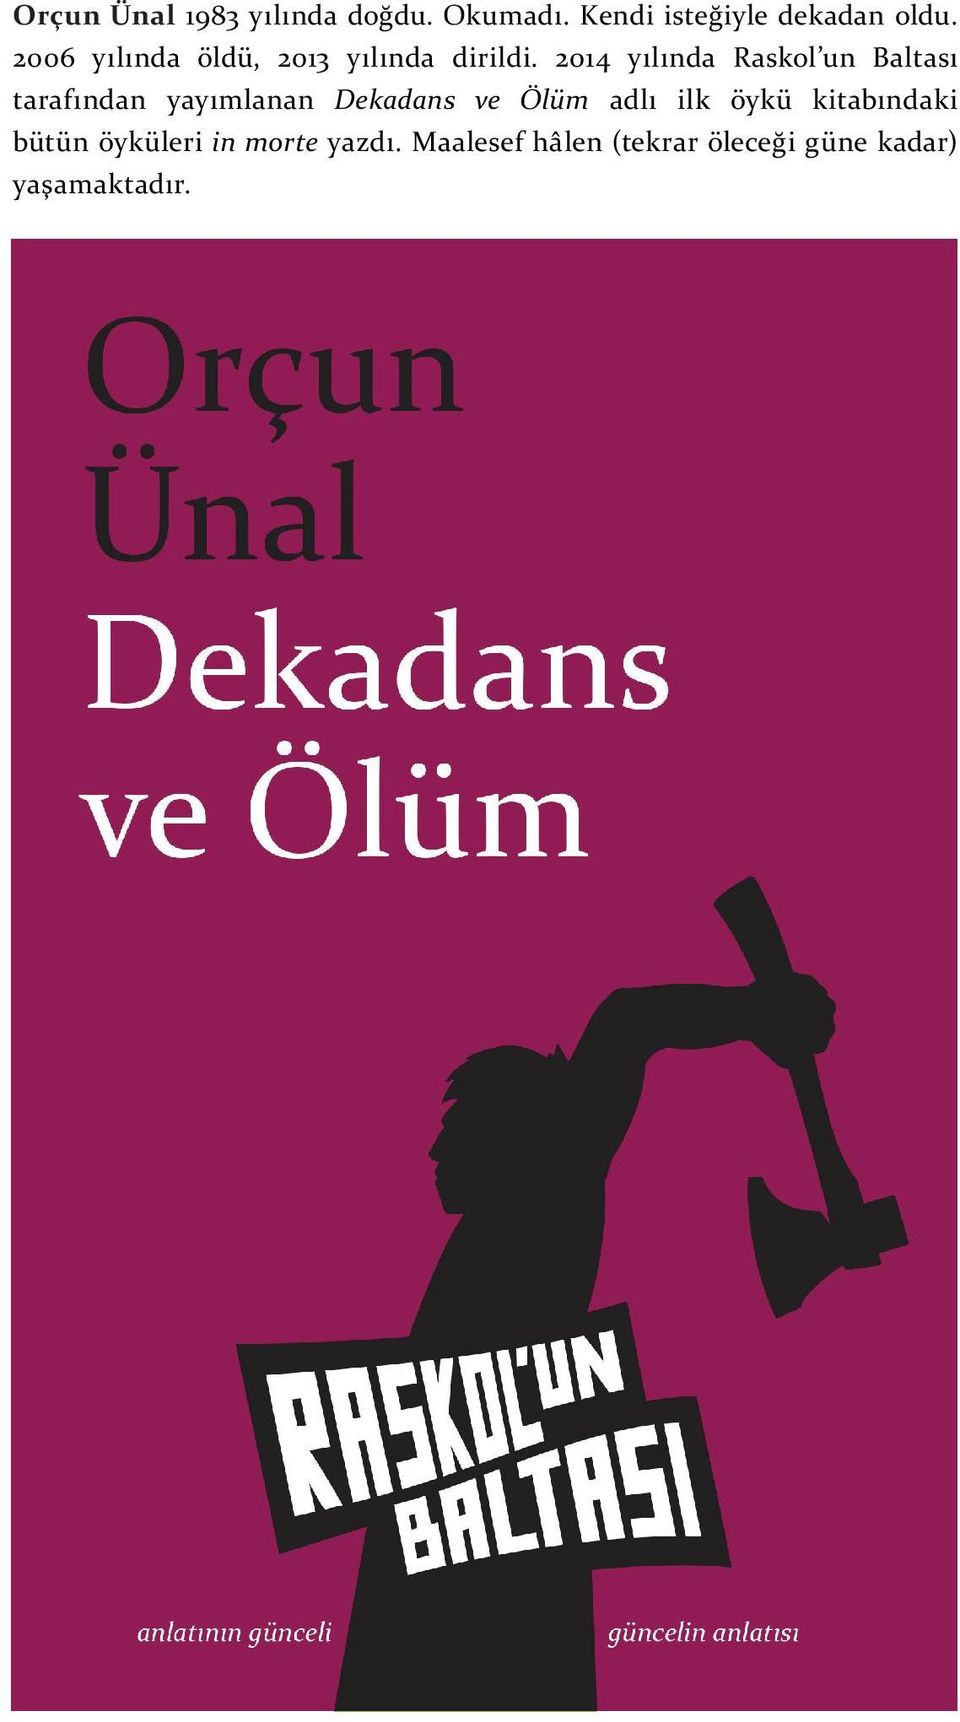 2014 yılında Raskol un Baltası tarafından yayımlanan Dekadans ve Ölüm